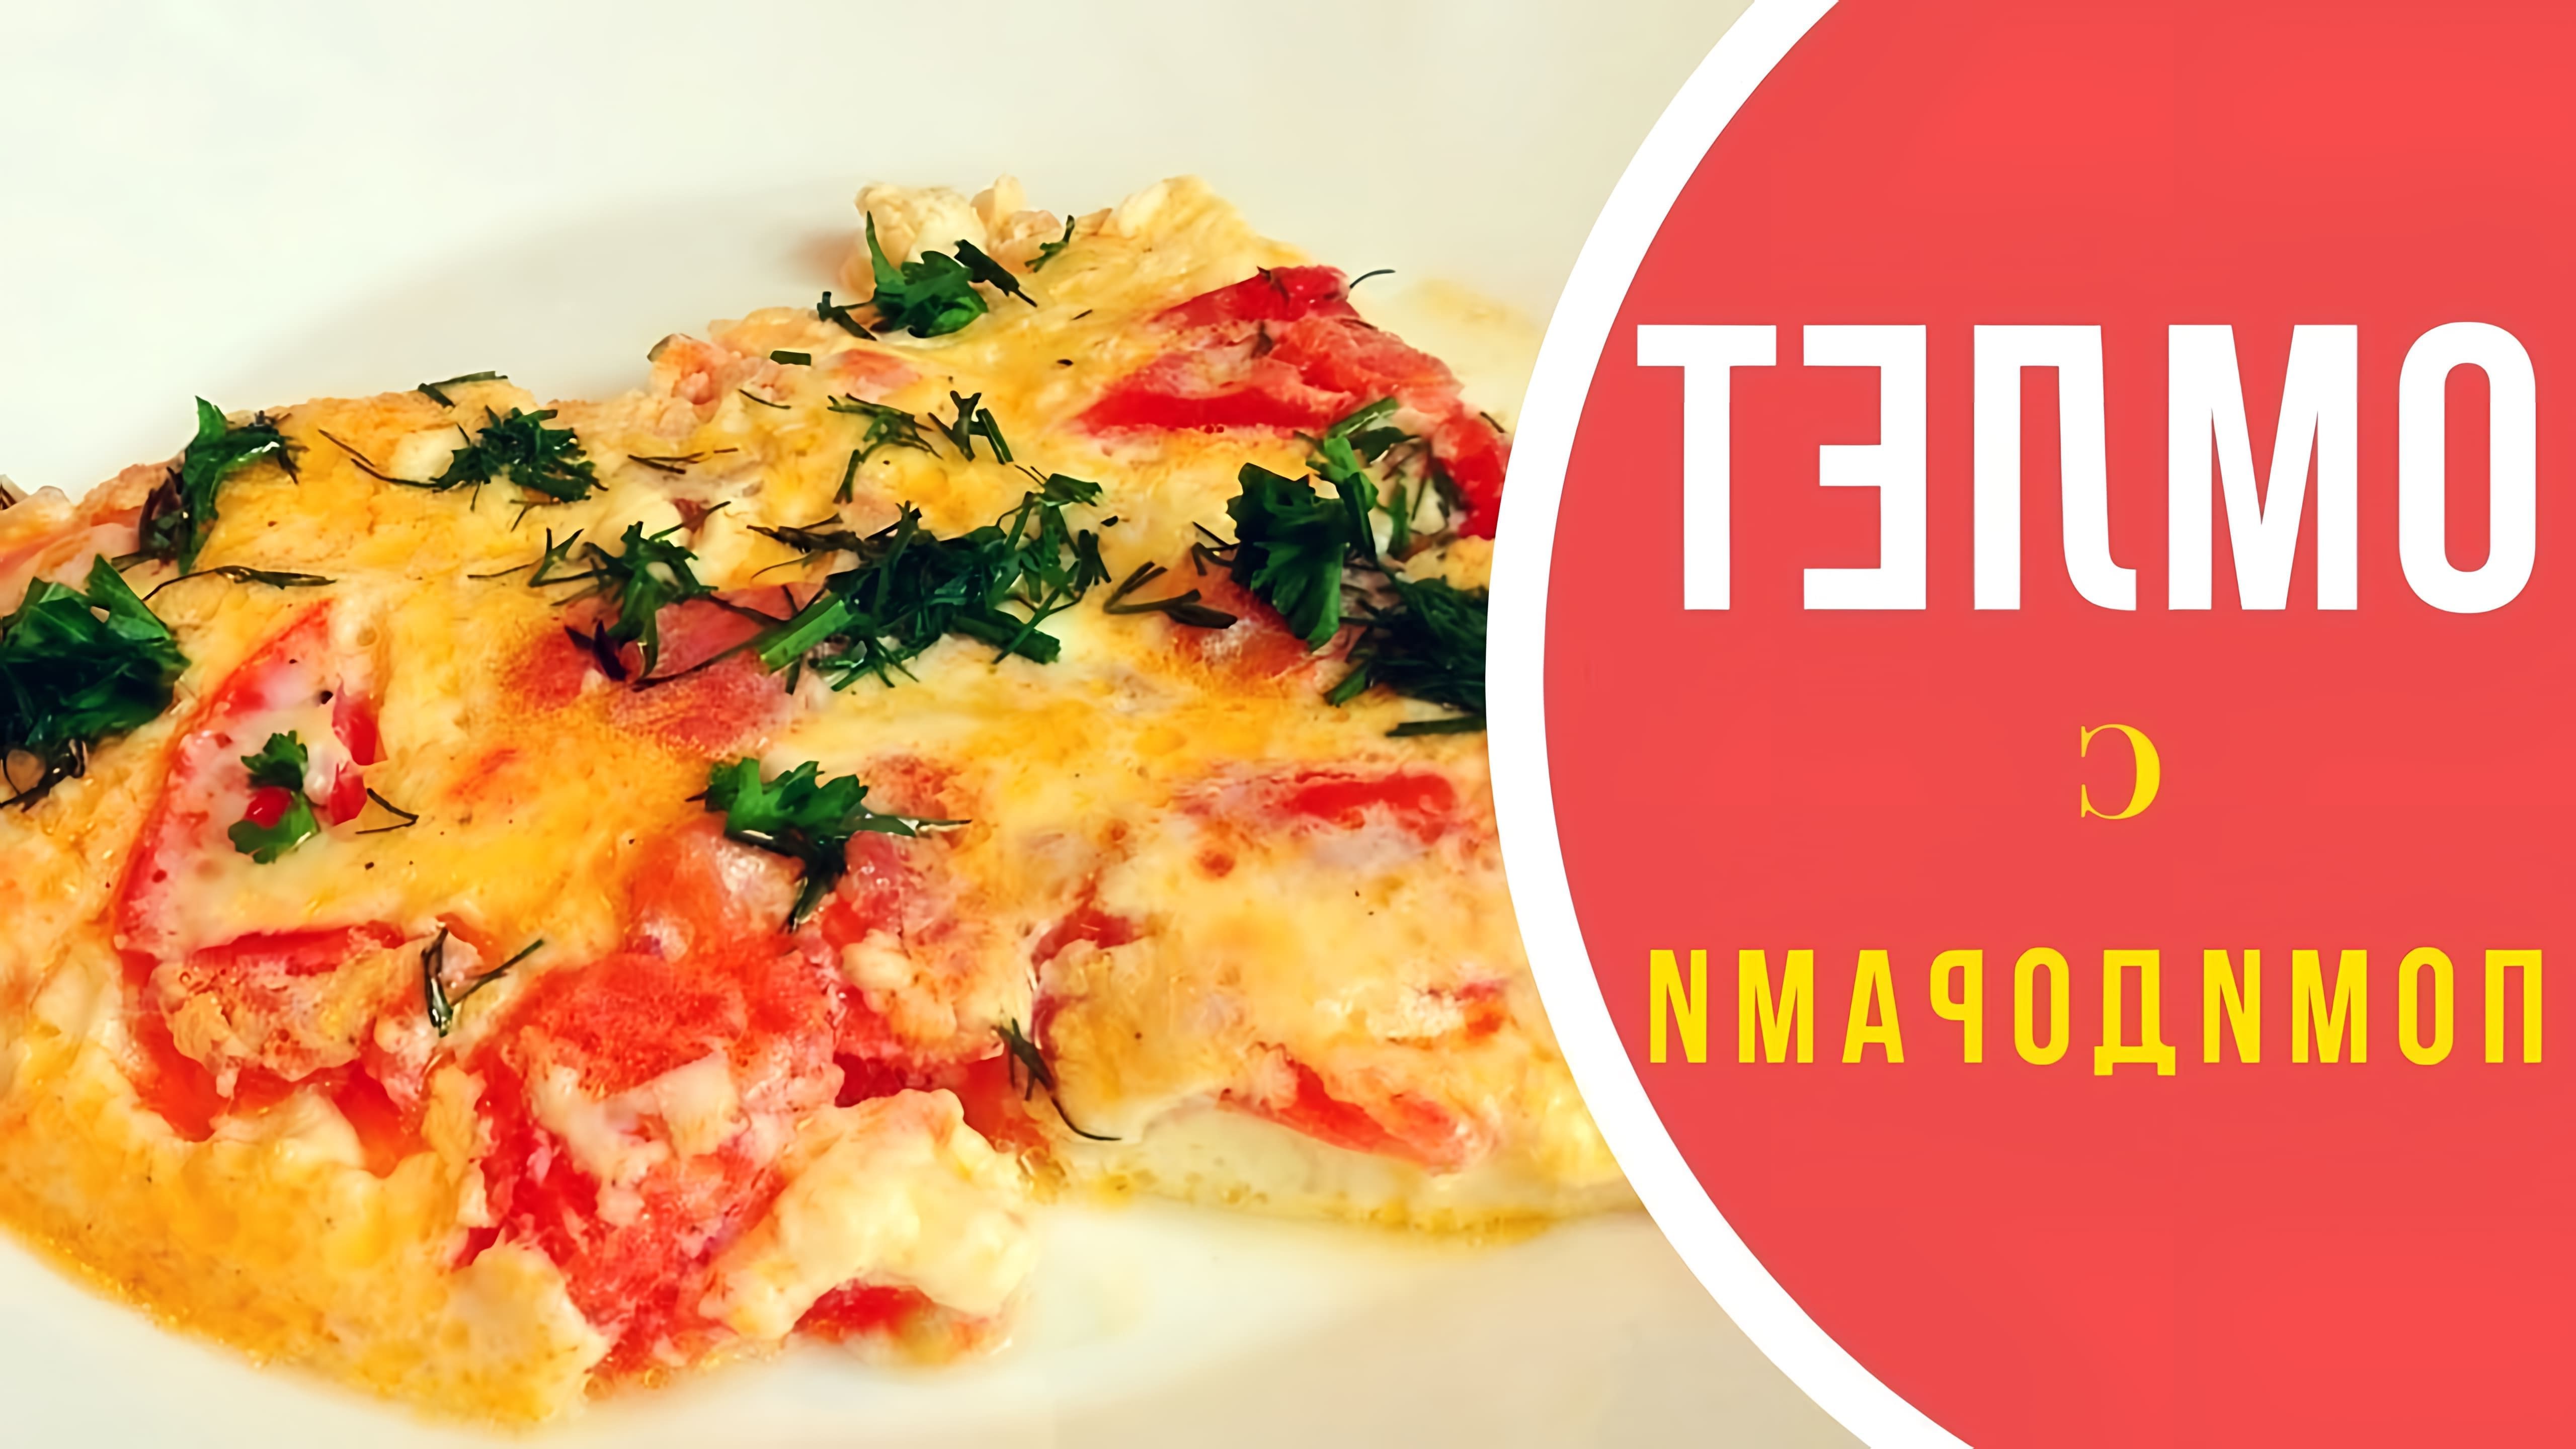 Видео-ролик с заголовком "Омлет с помидорами" представляет собой процесс приготовления вкусного и простого блюда